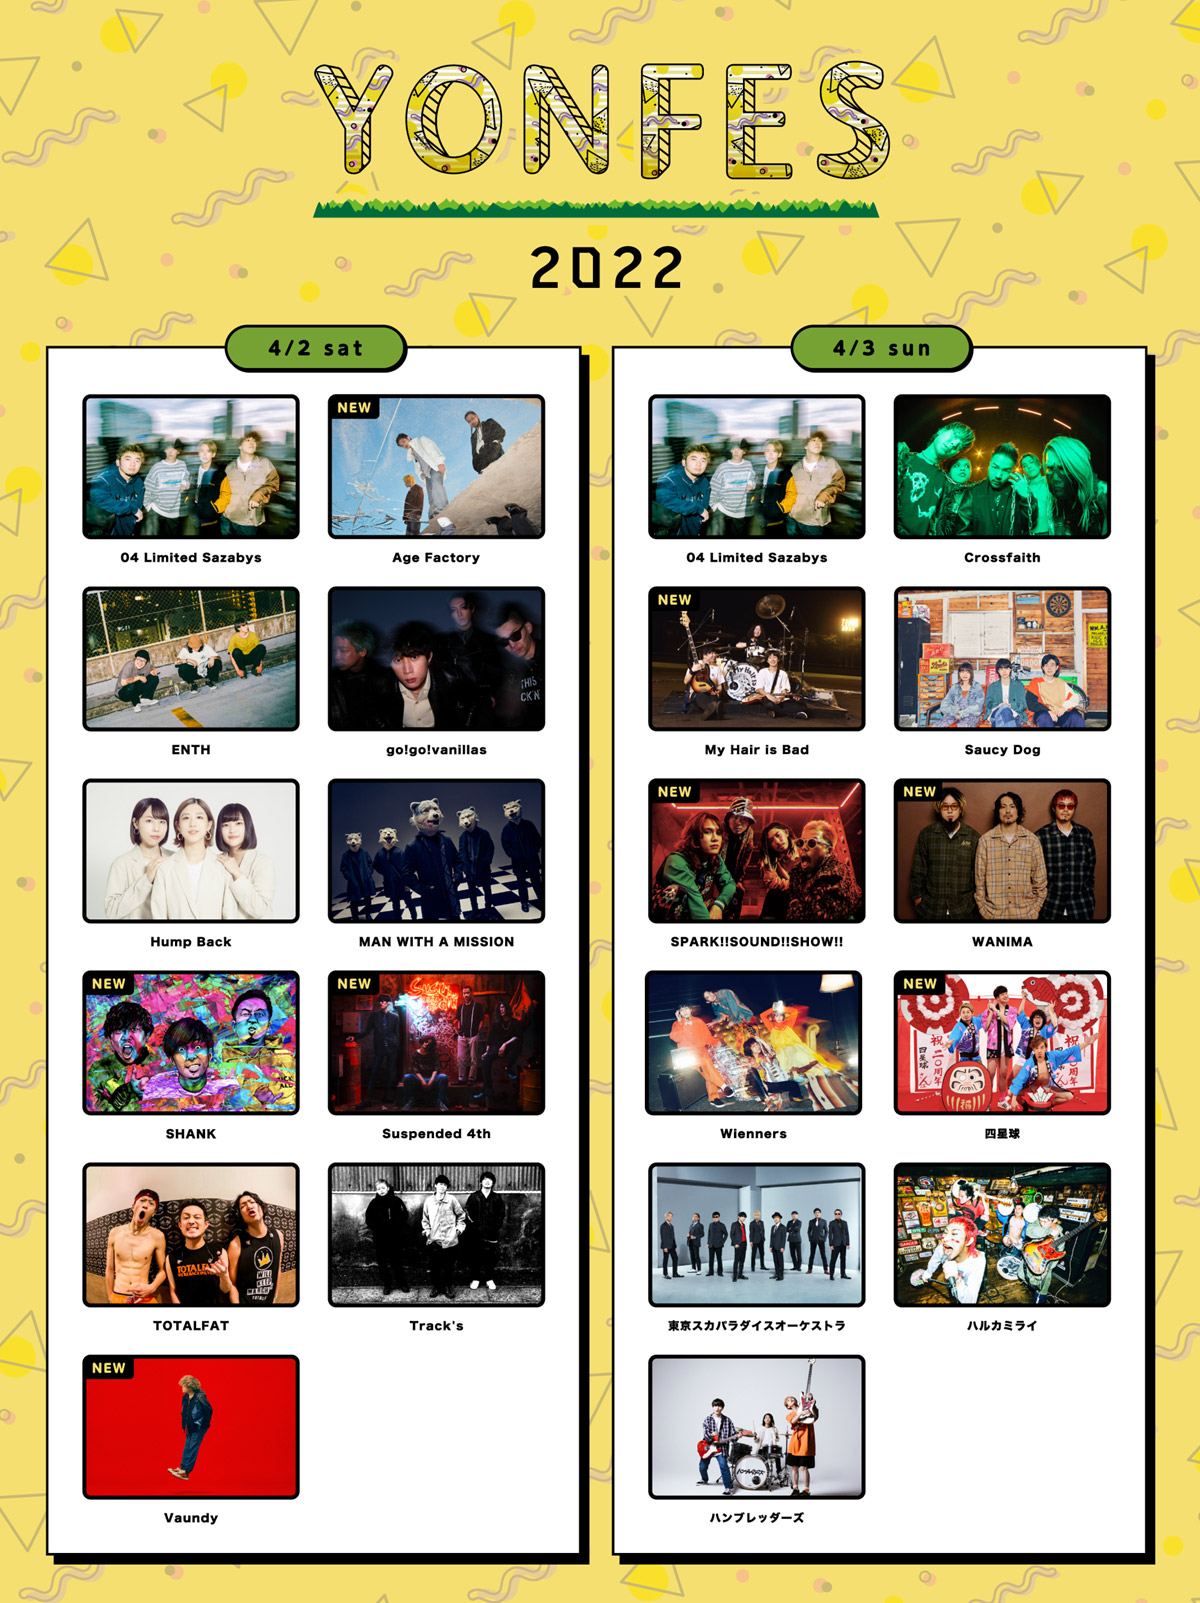 主催の愛知・野外春フェス＜YON FES 2022＞、タイムテーブルを